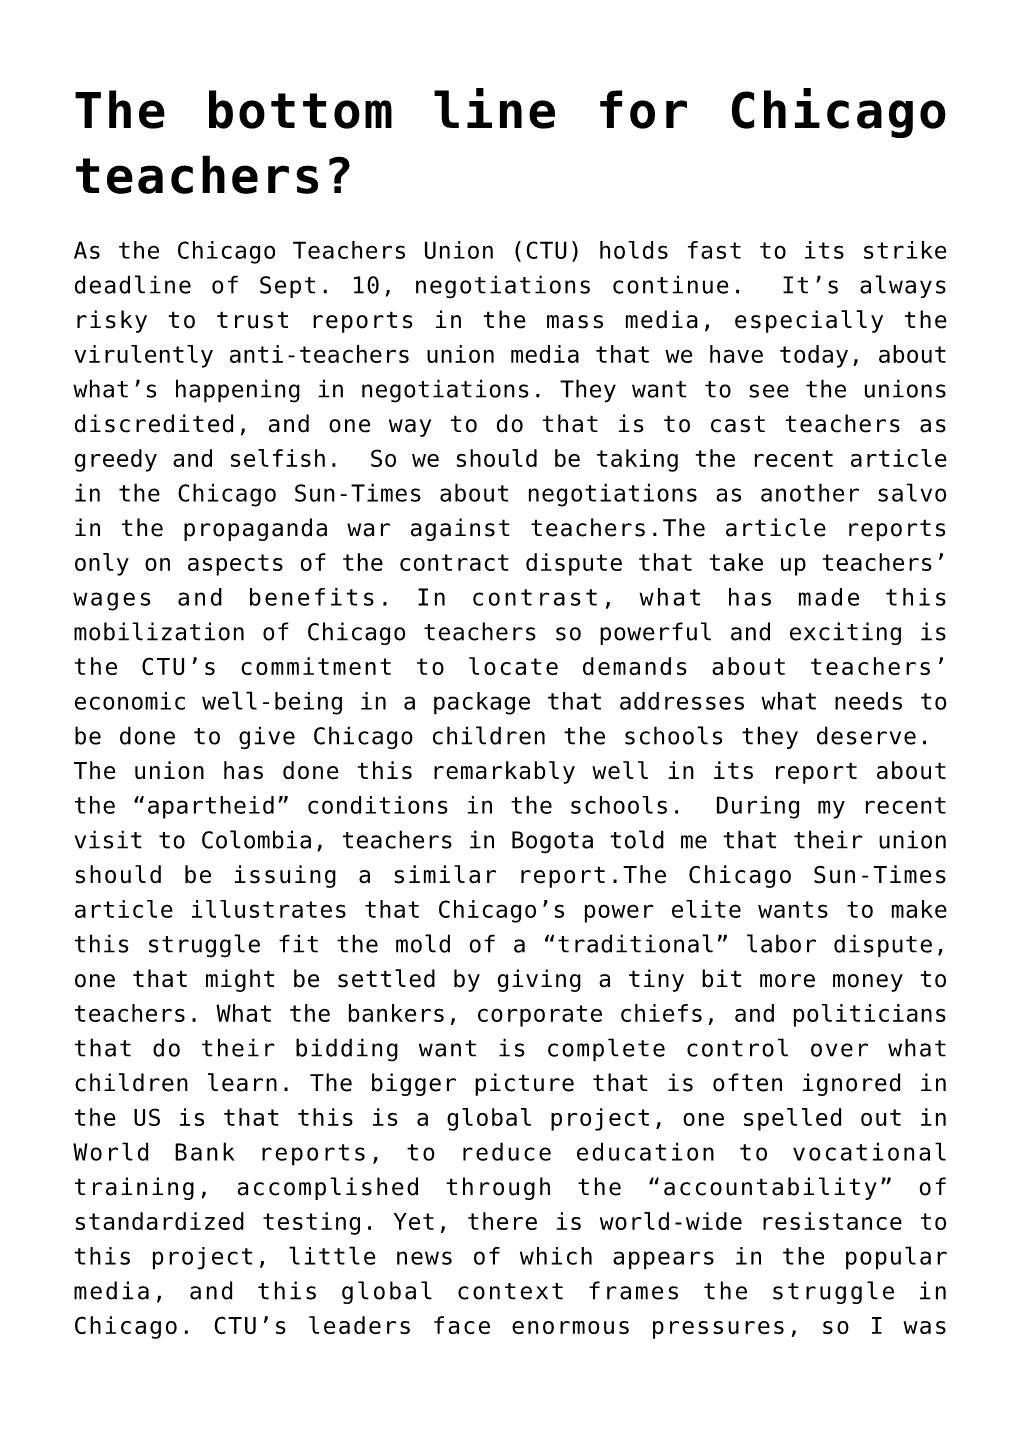 The Bottom Line for Chicago Teachers?